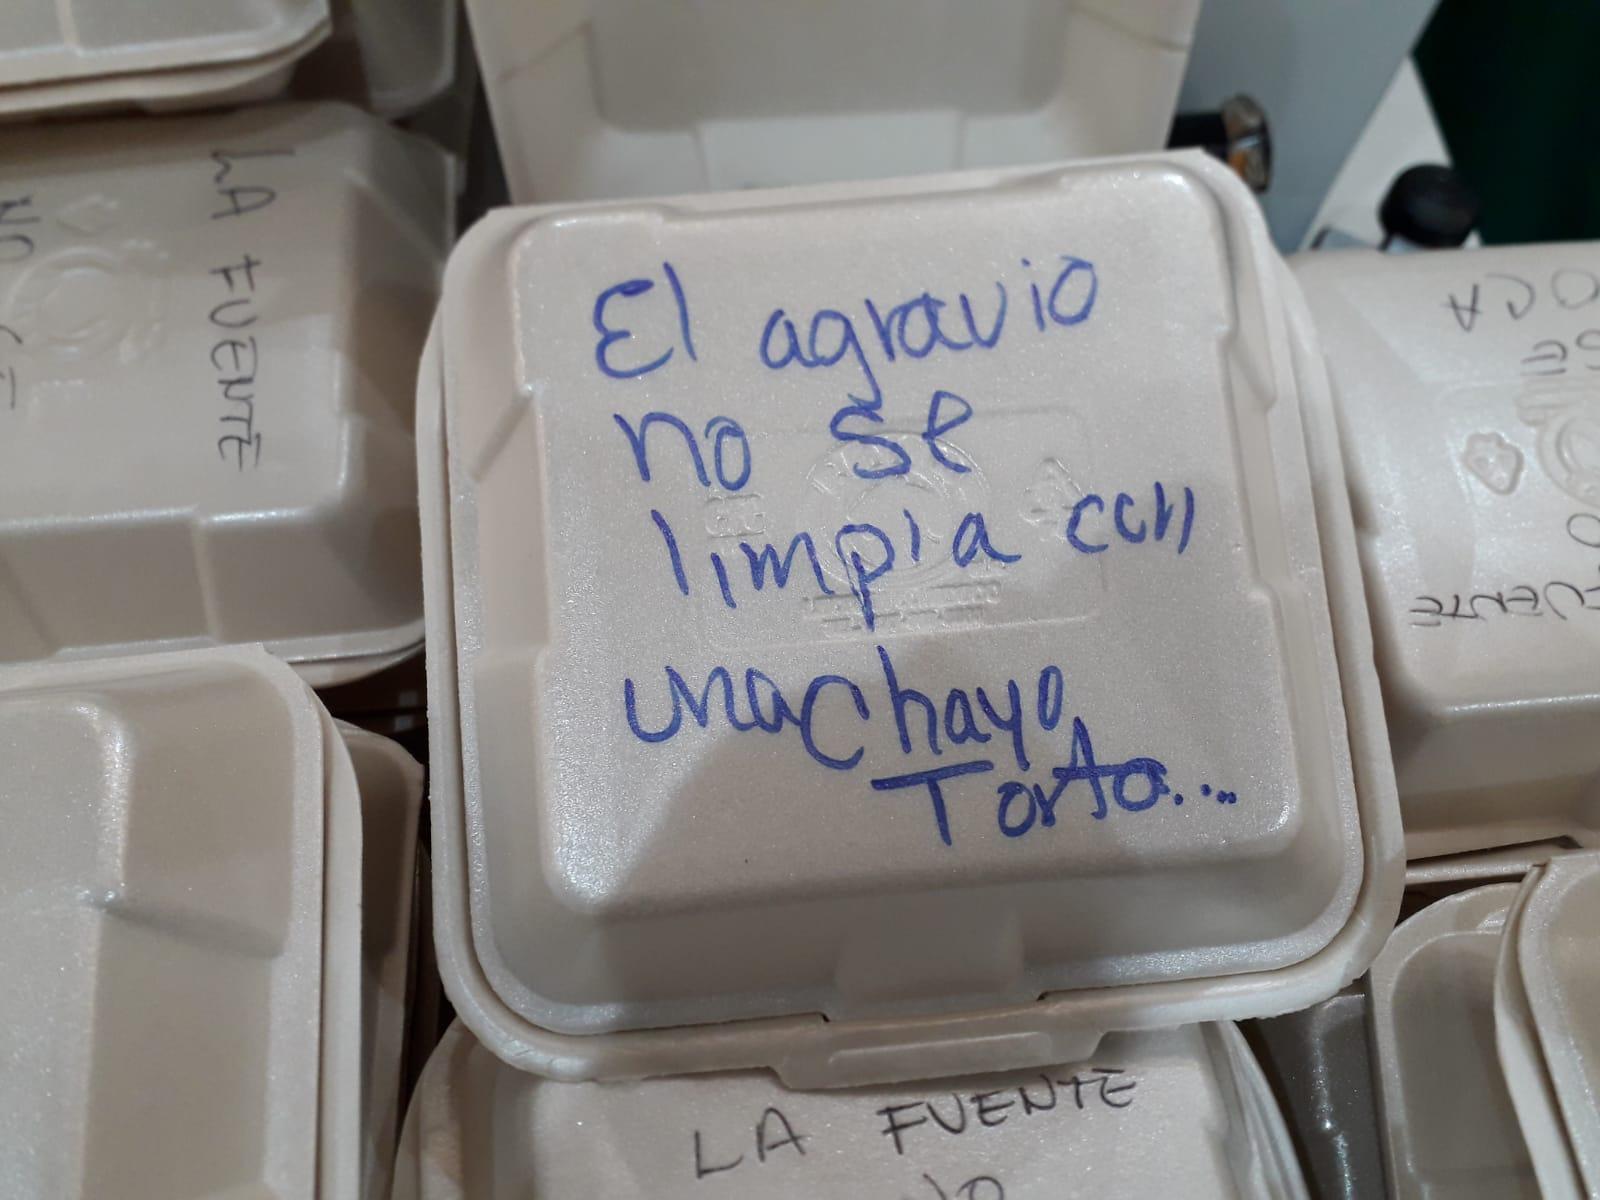 “Chayo torta”, Ignacio Mier busca reconciliarse con prensa de San Lázaro